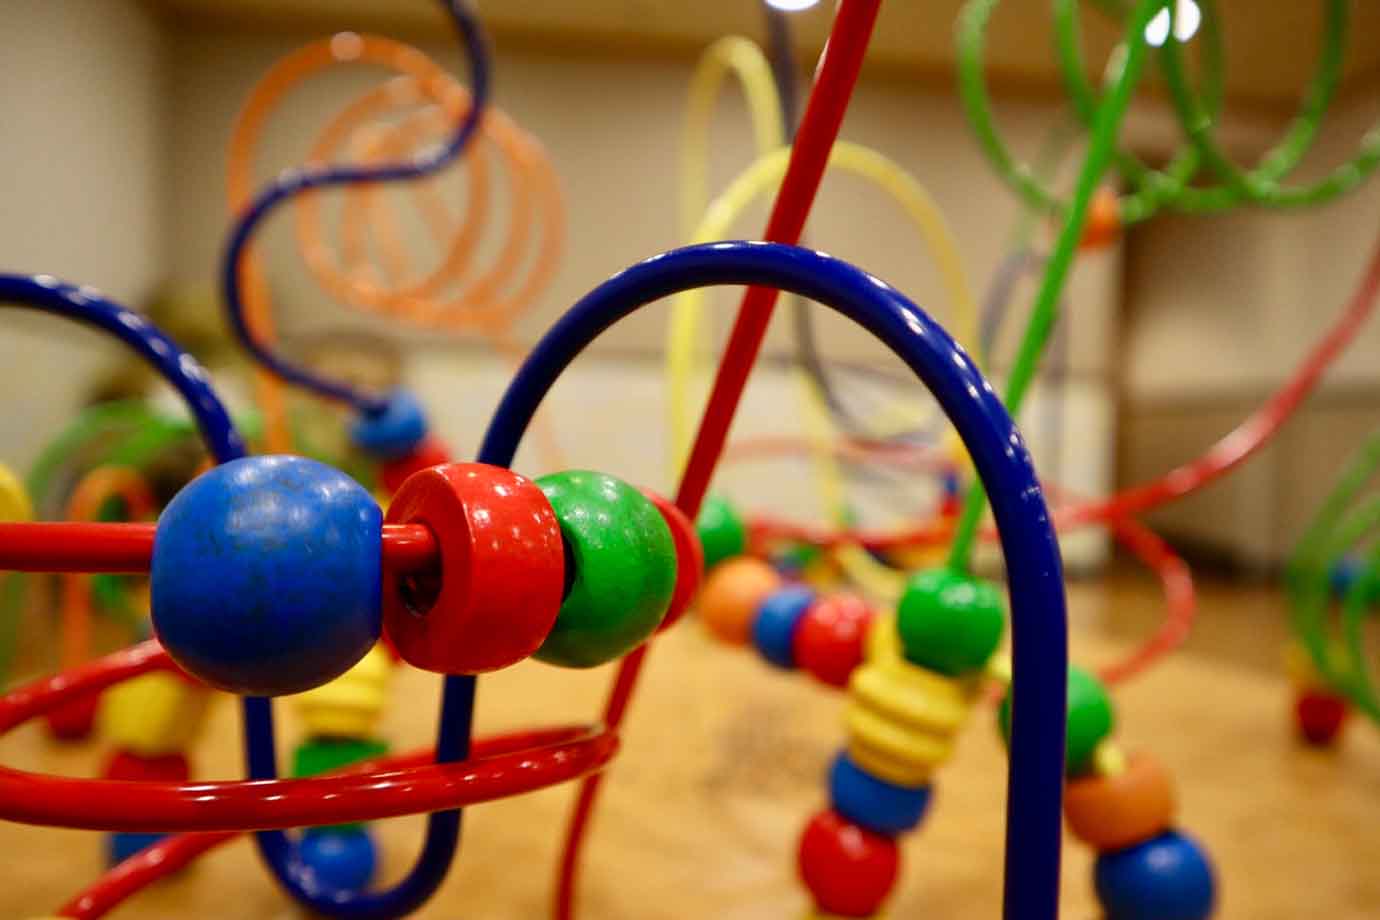 ループは、太いワイヤーに球が通してあるおもちゃ。おもちゃ屋さんや児童館などで見かけることも多いおもちゃです。